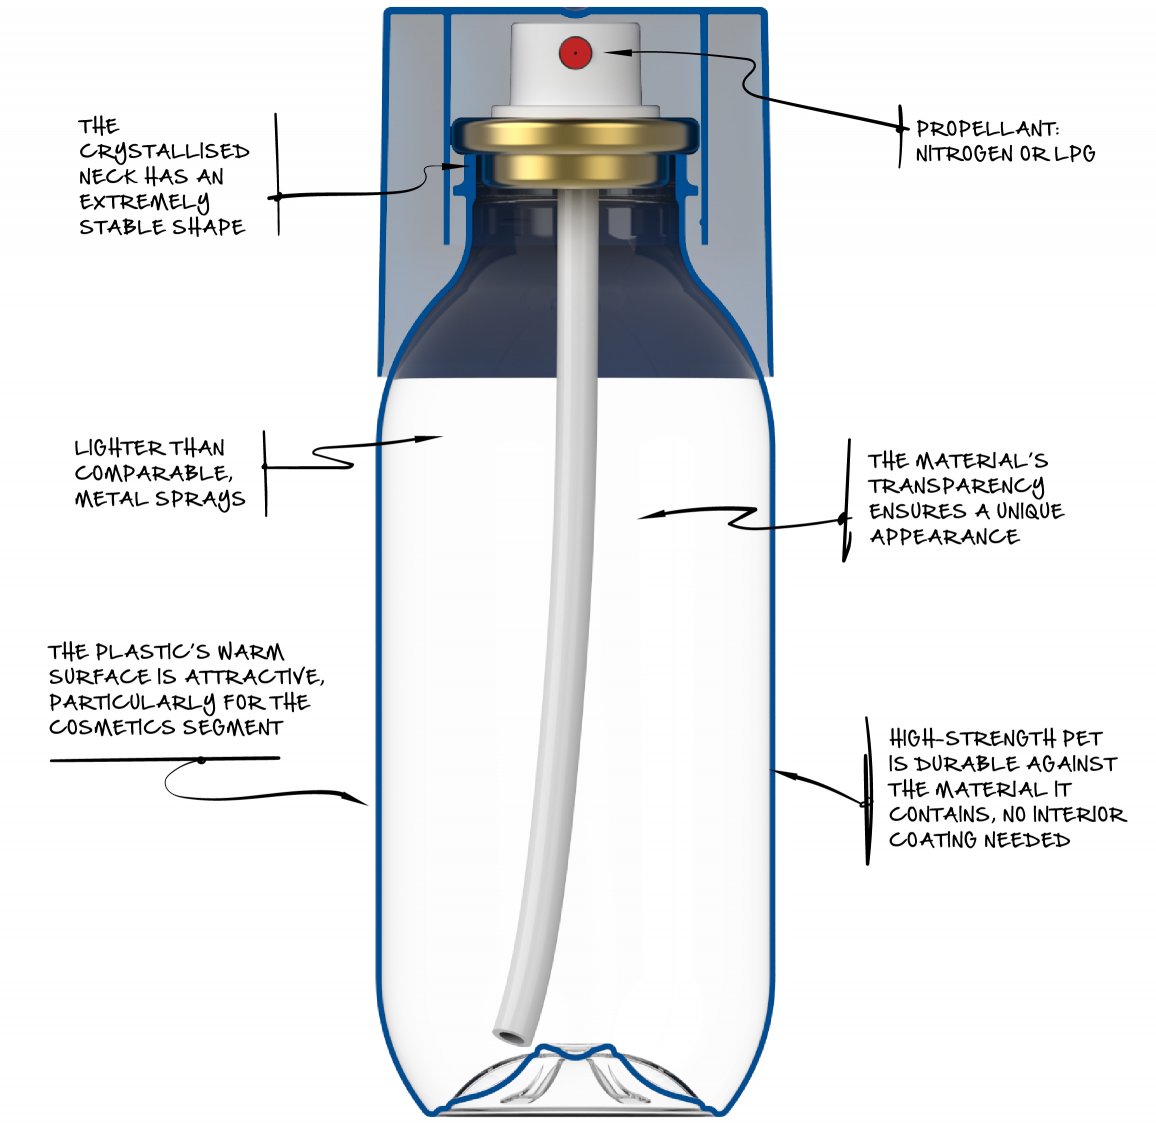 plasticpackaging: Aerosol in a PET bottle